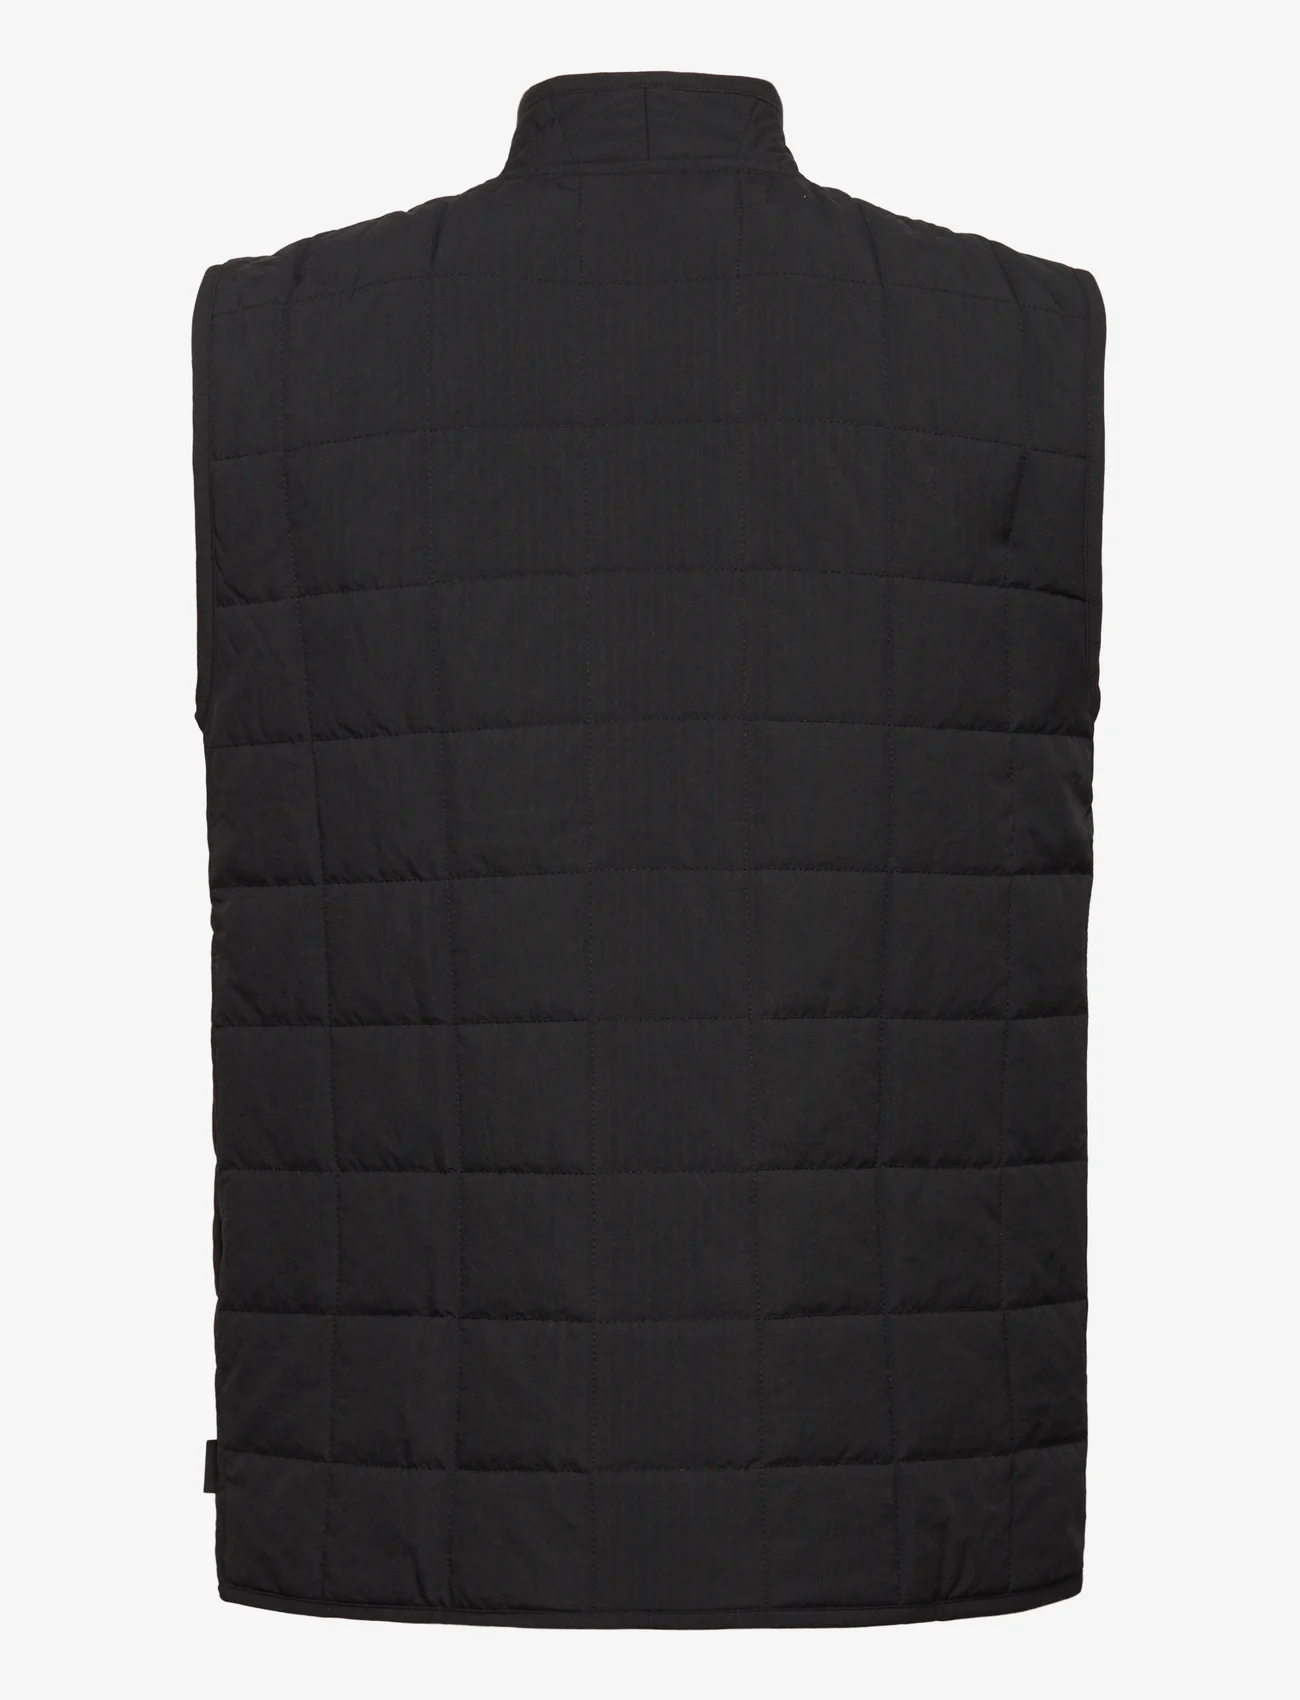 Rains - Giron Liner Vest T1 - spring jackets - black - 1